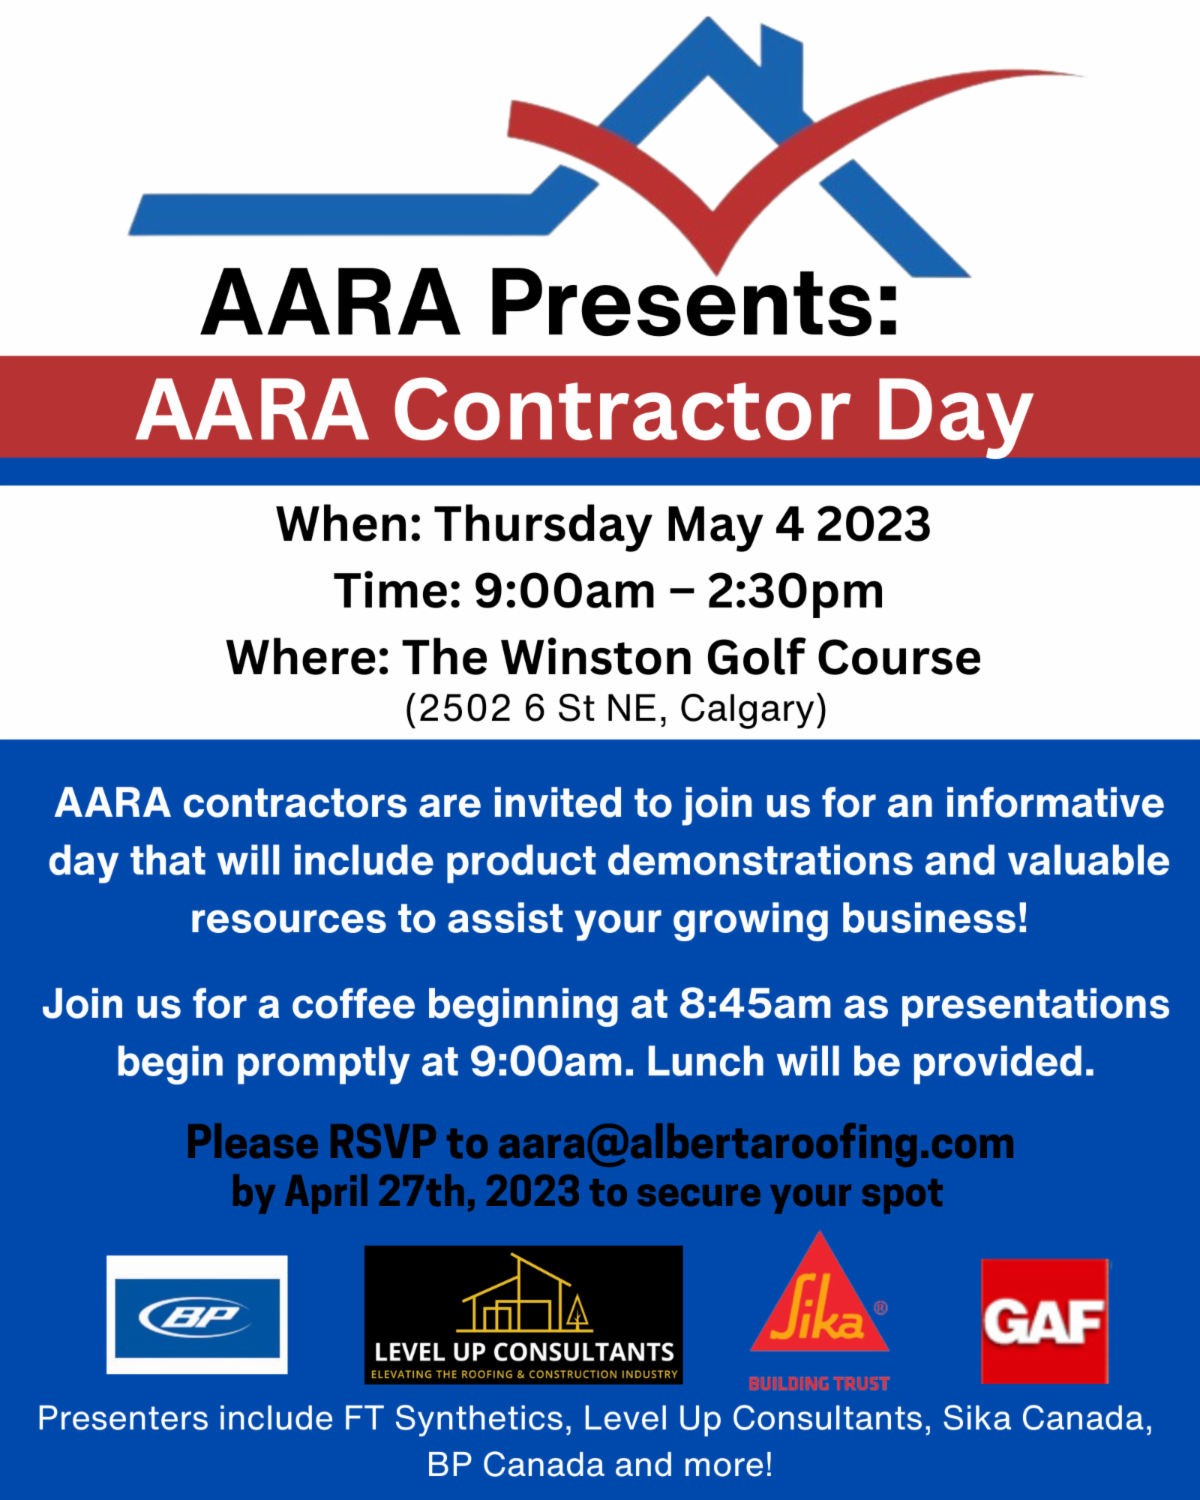 AARA Contractor Day 2023